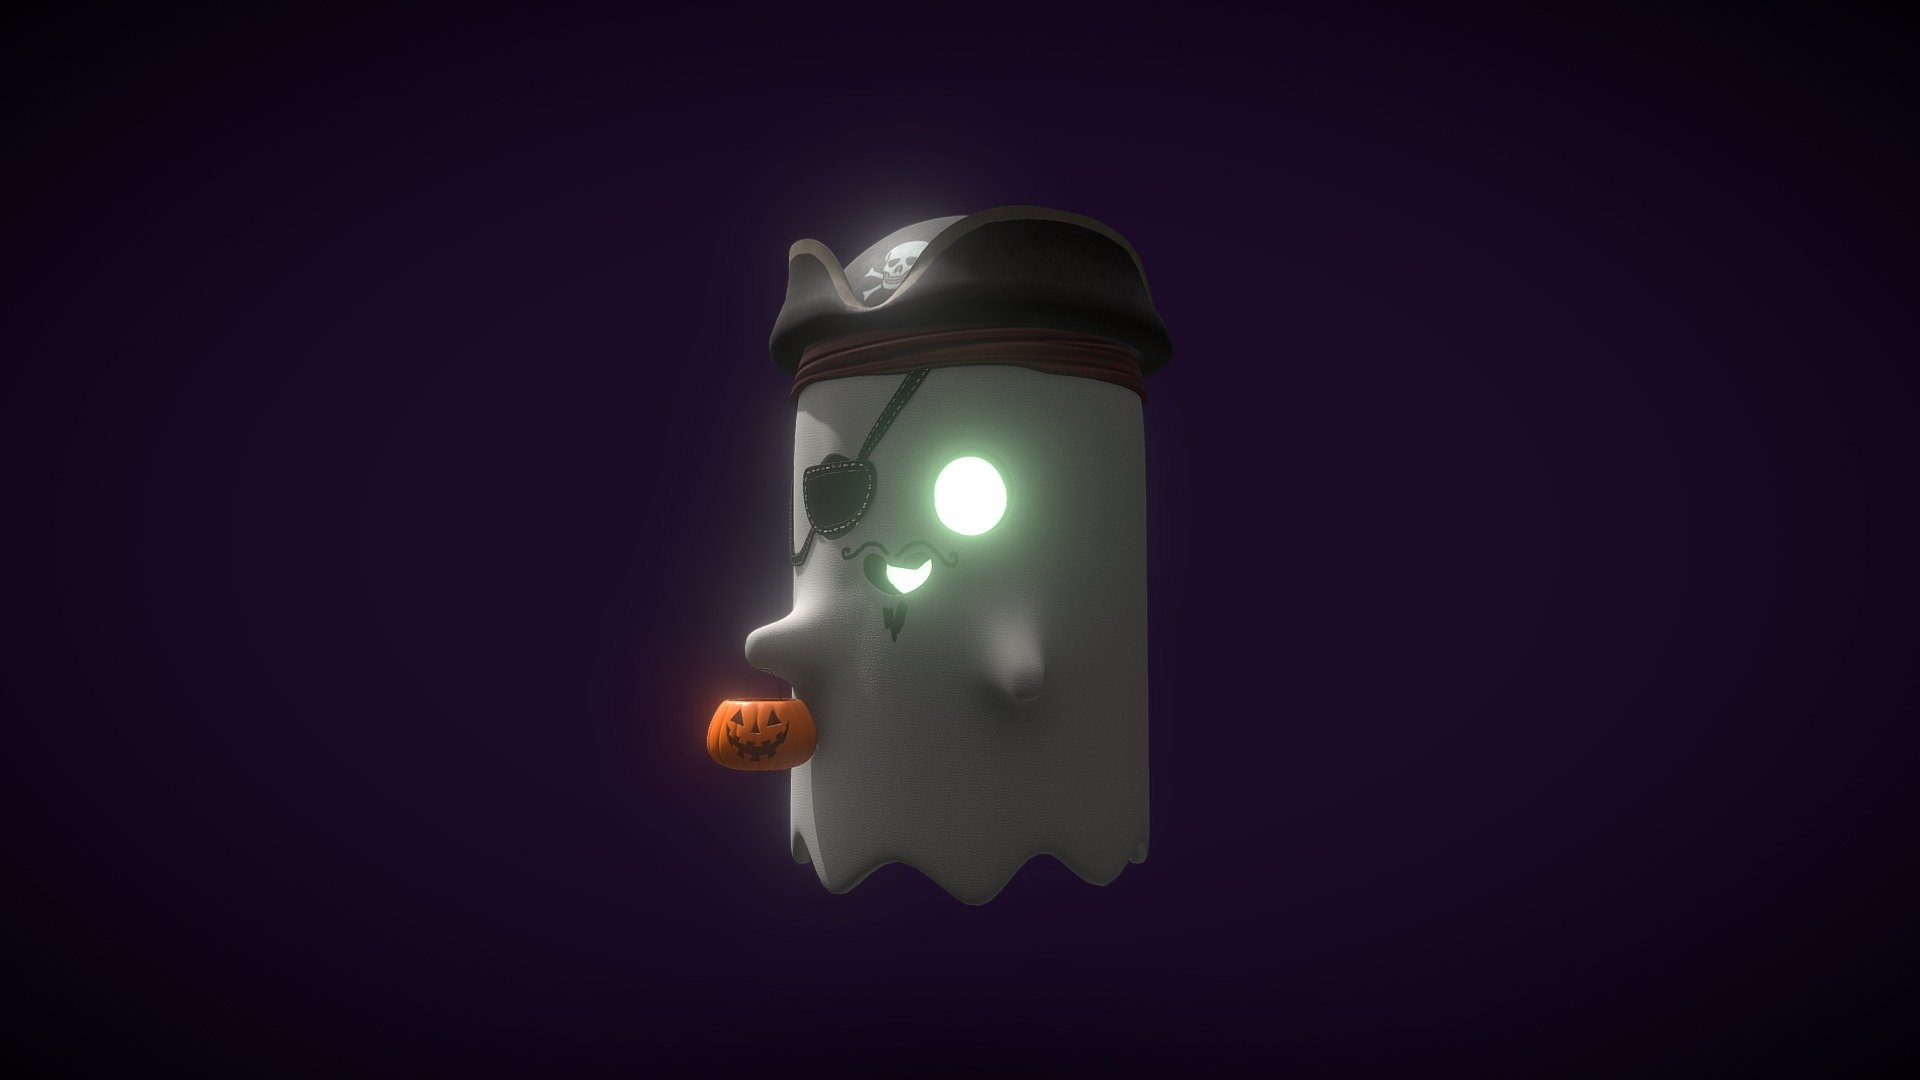 A little ghost dressed as a pirate for Halloween :D - Halloween Ghost - 3D model by Robert Raicea (@Robert_Raicea) 3d model